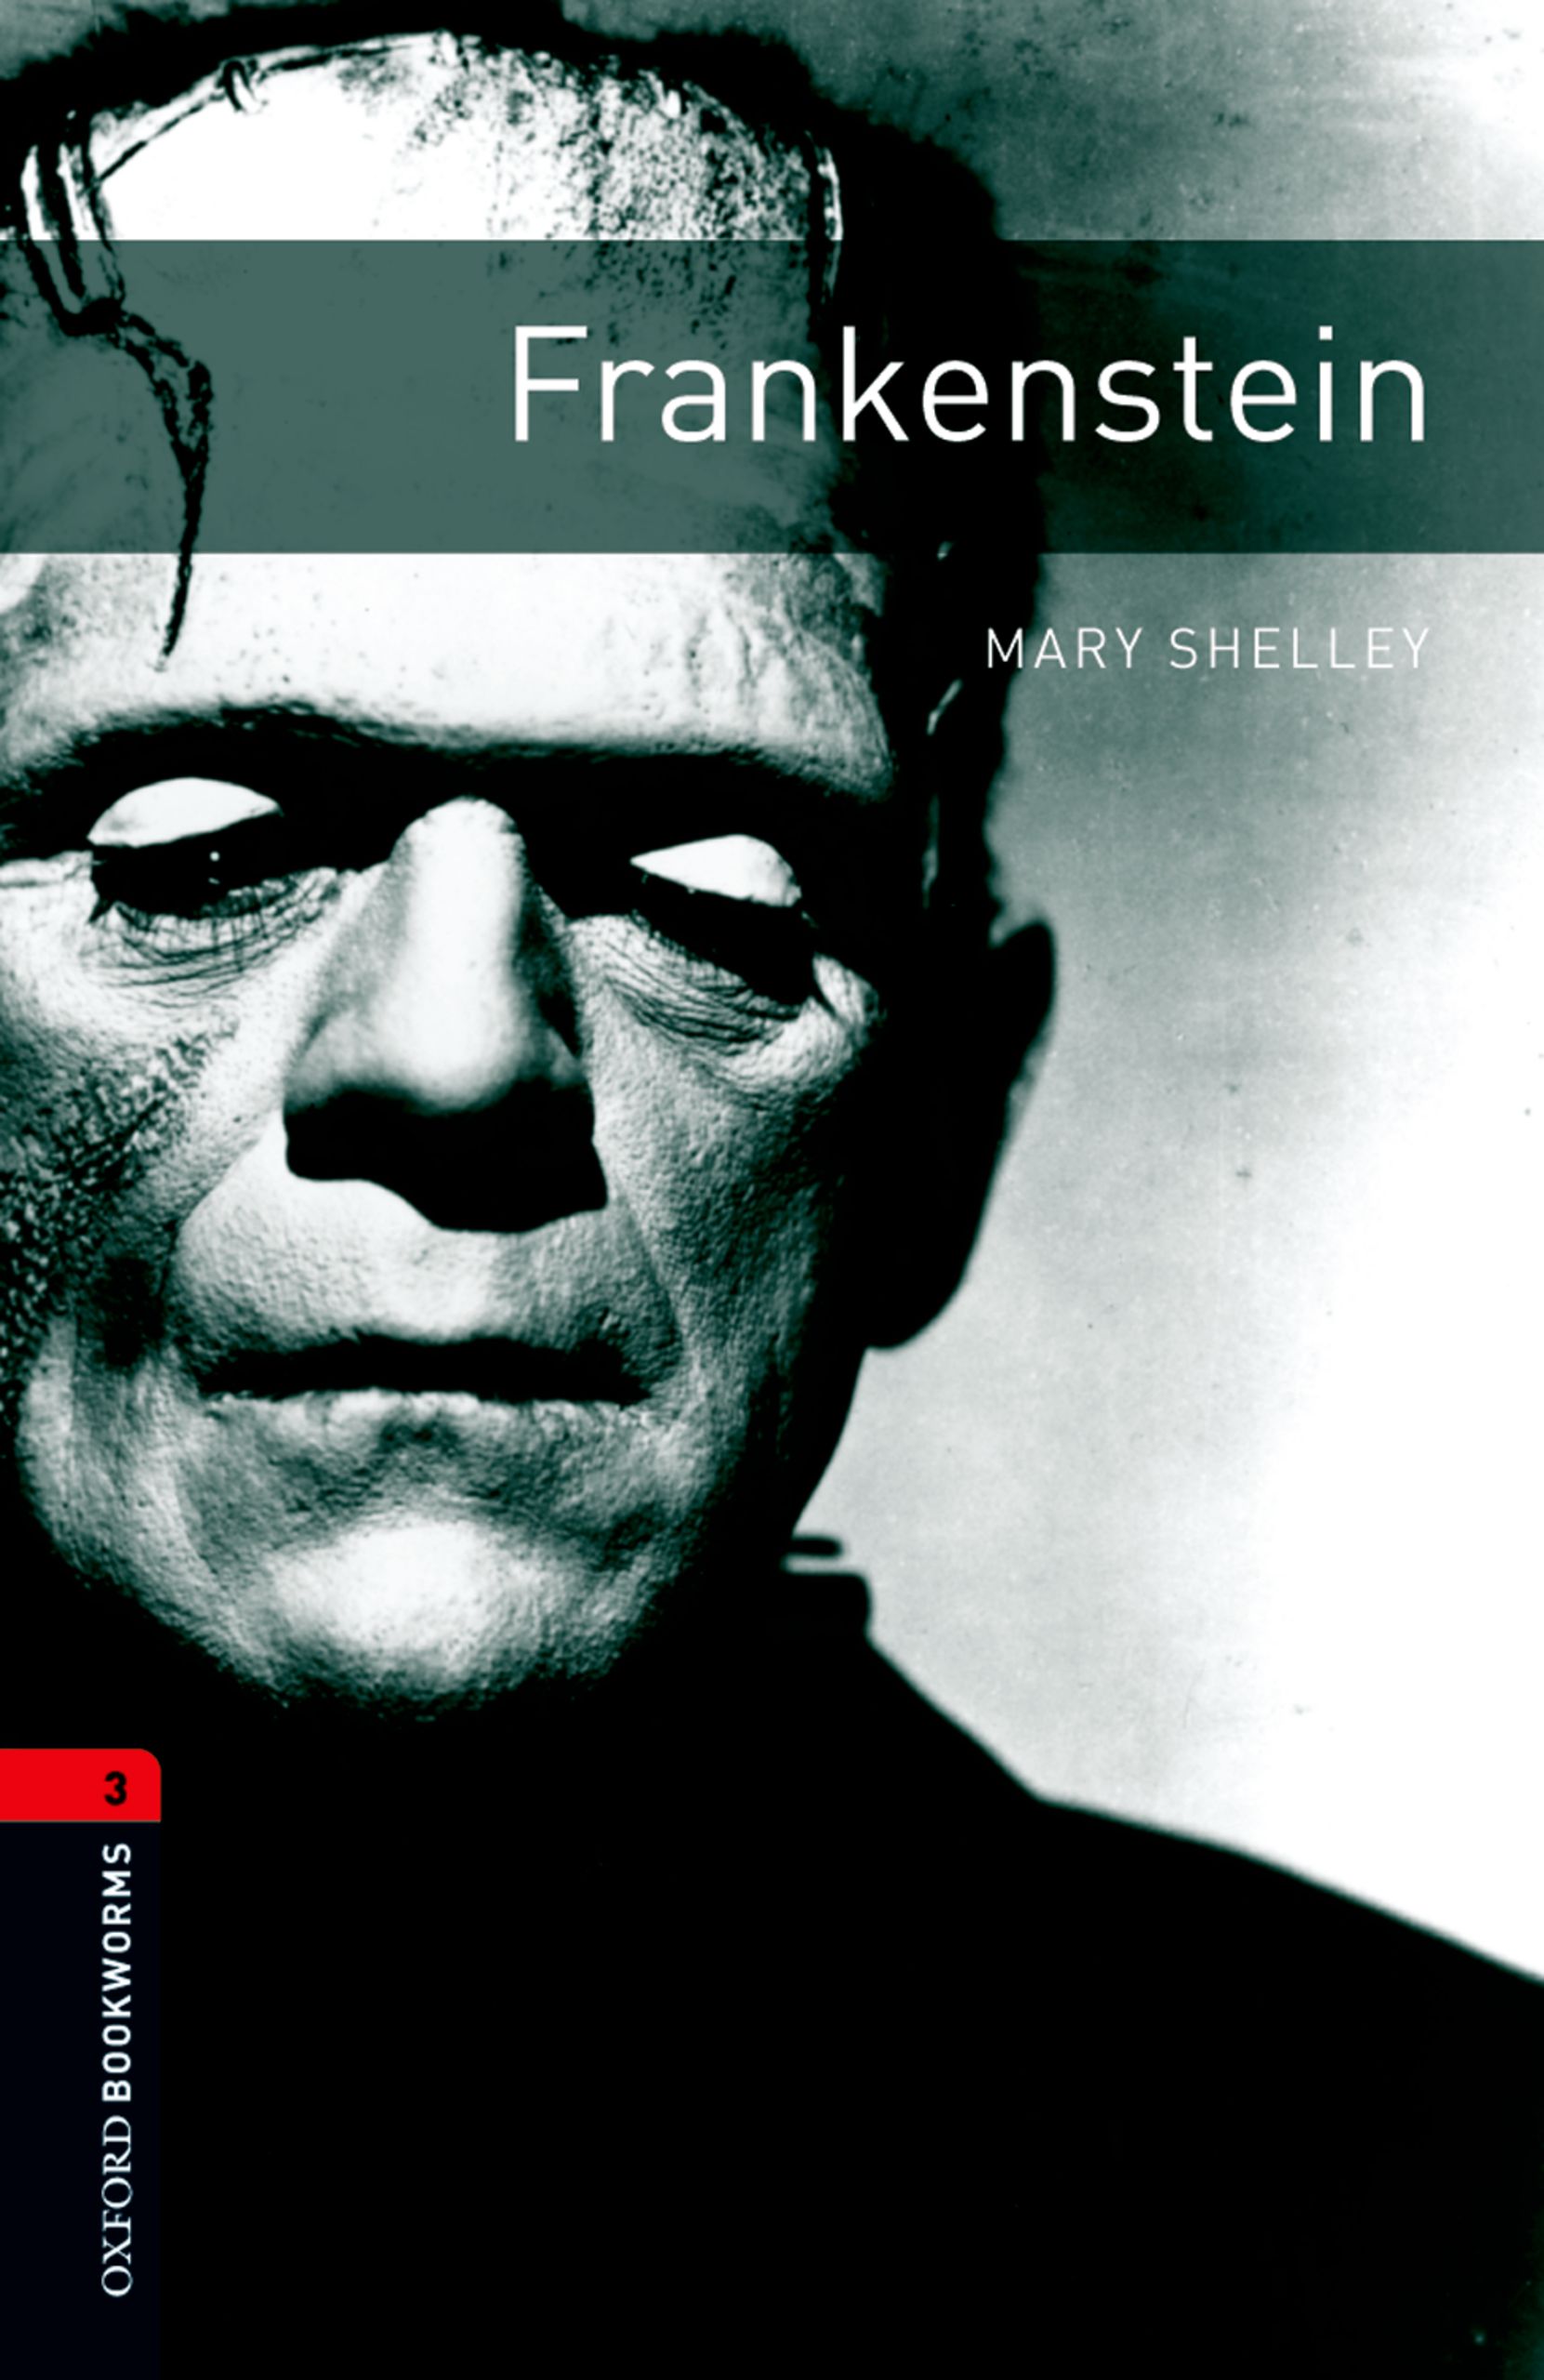 Книга Frankenstein из серии , созданная Mary Shelley, может относится к жанру Иностранные языки, Иностранные языки, Зарубежная образовательная литература. Стоимость электронной книги Frankenstein с идентификатором 23573776 составляет 405.87 руб.